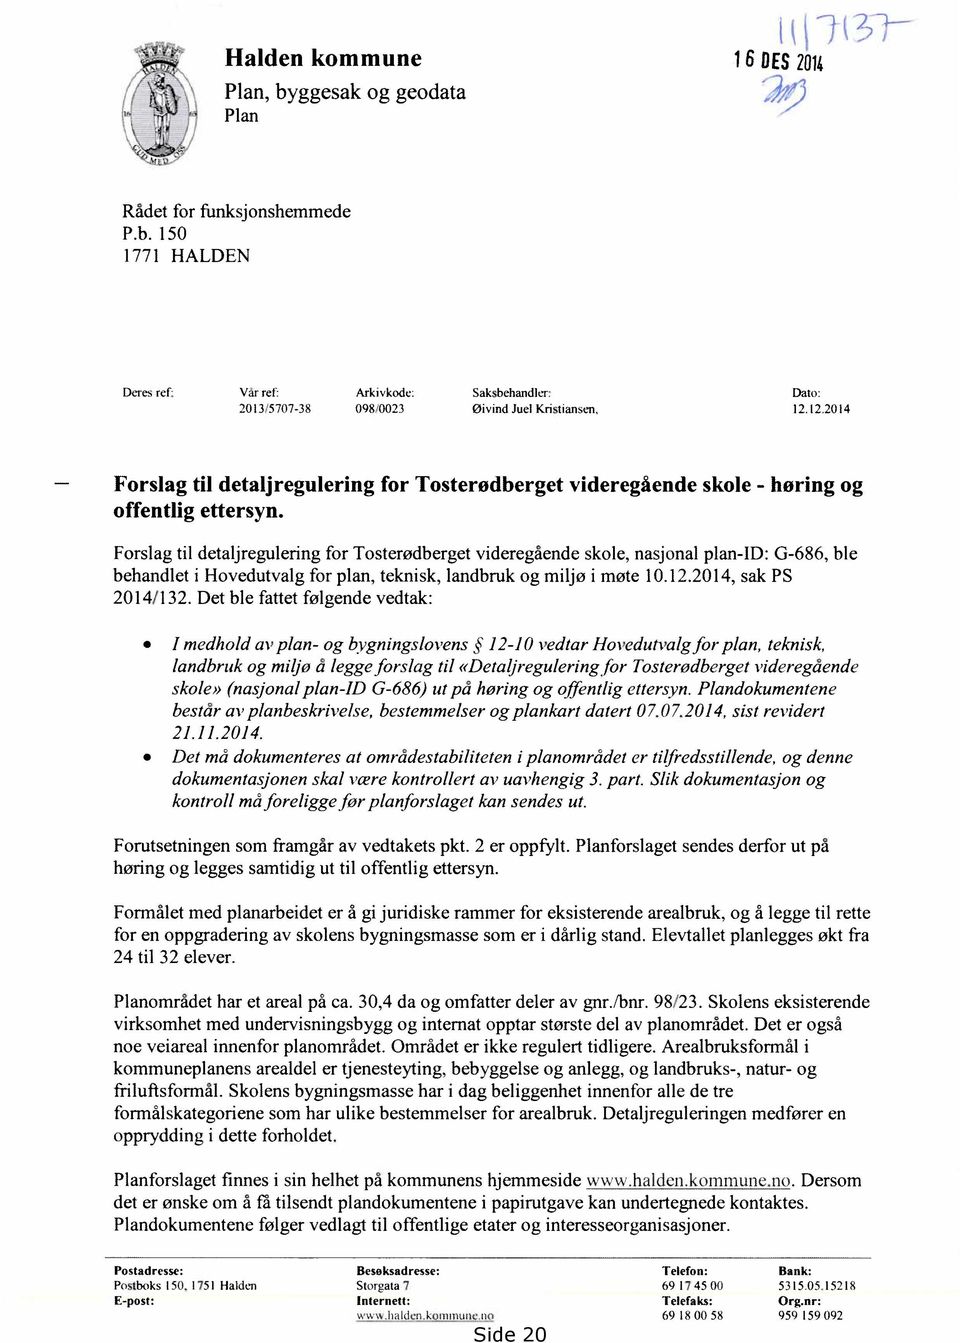 Forslag til detaljregulering for Tosterødberget videregående skole, nasjonal plan-id: G-686, ble behandlet i Hovedutvalg for plan, teknisk, landbruk og miljø i møte 10.12.2014, sak PS 2014/132.